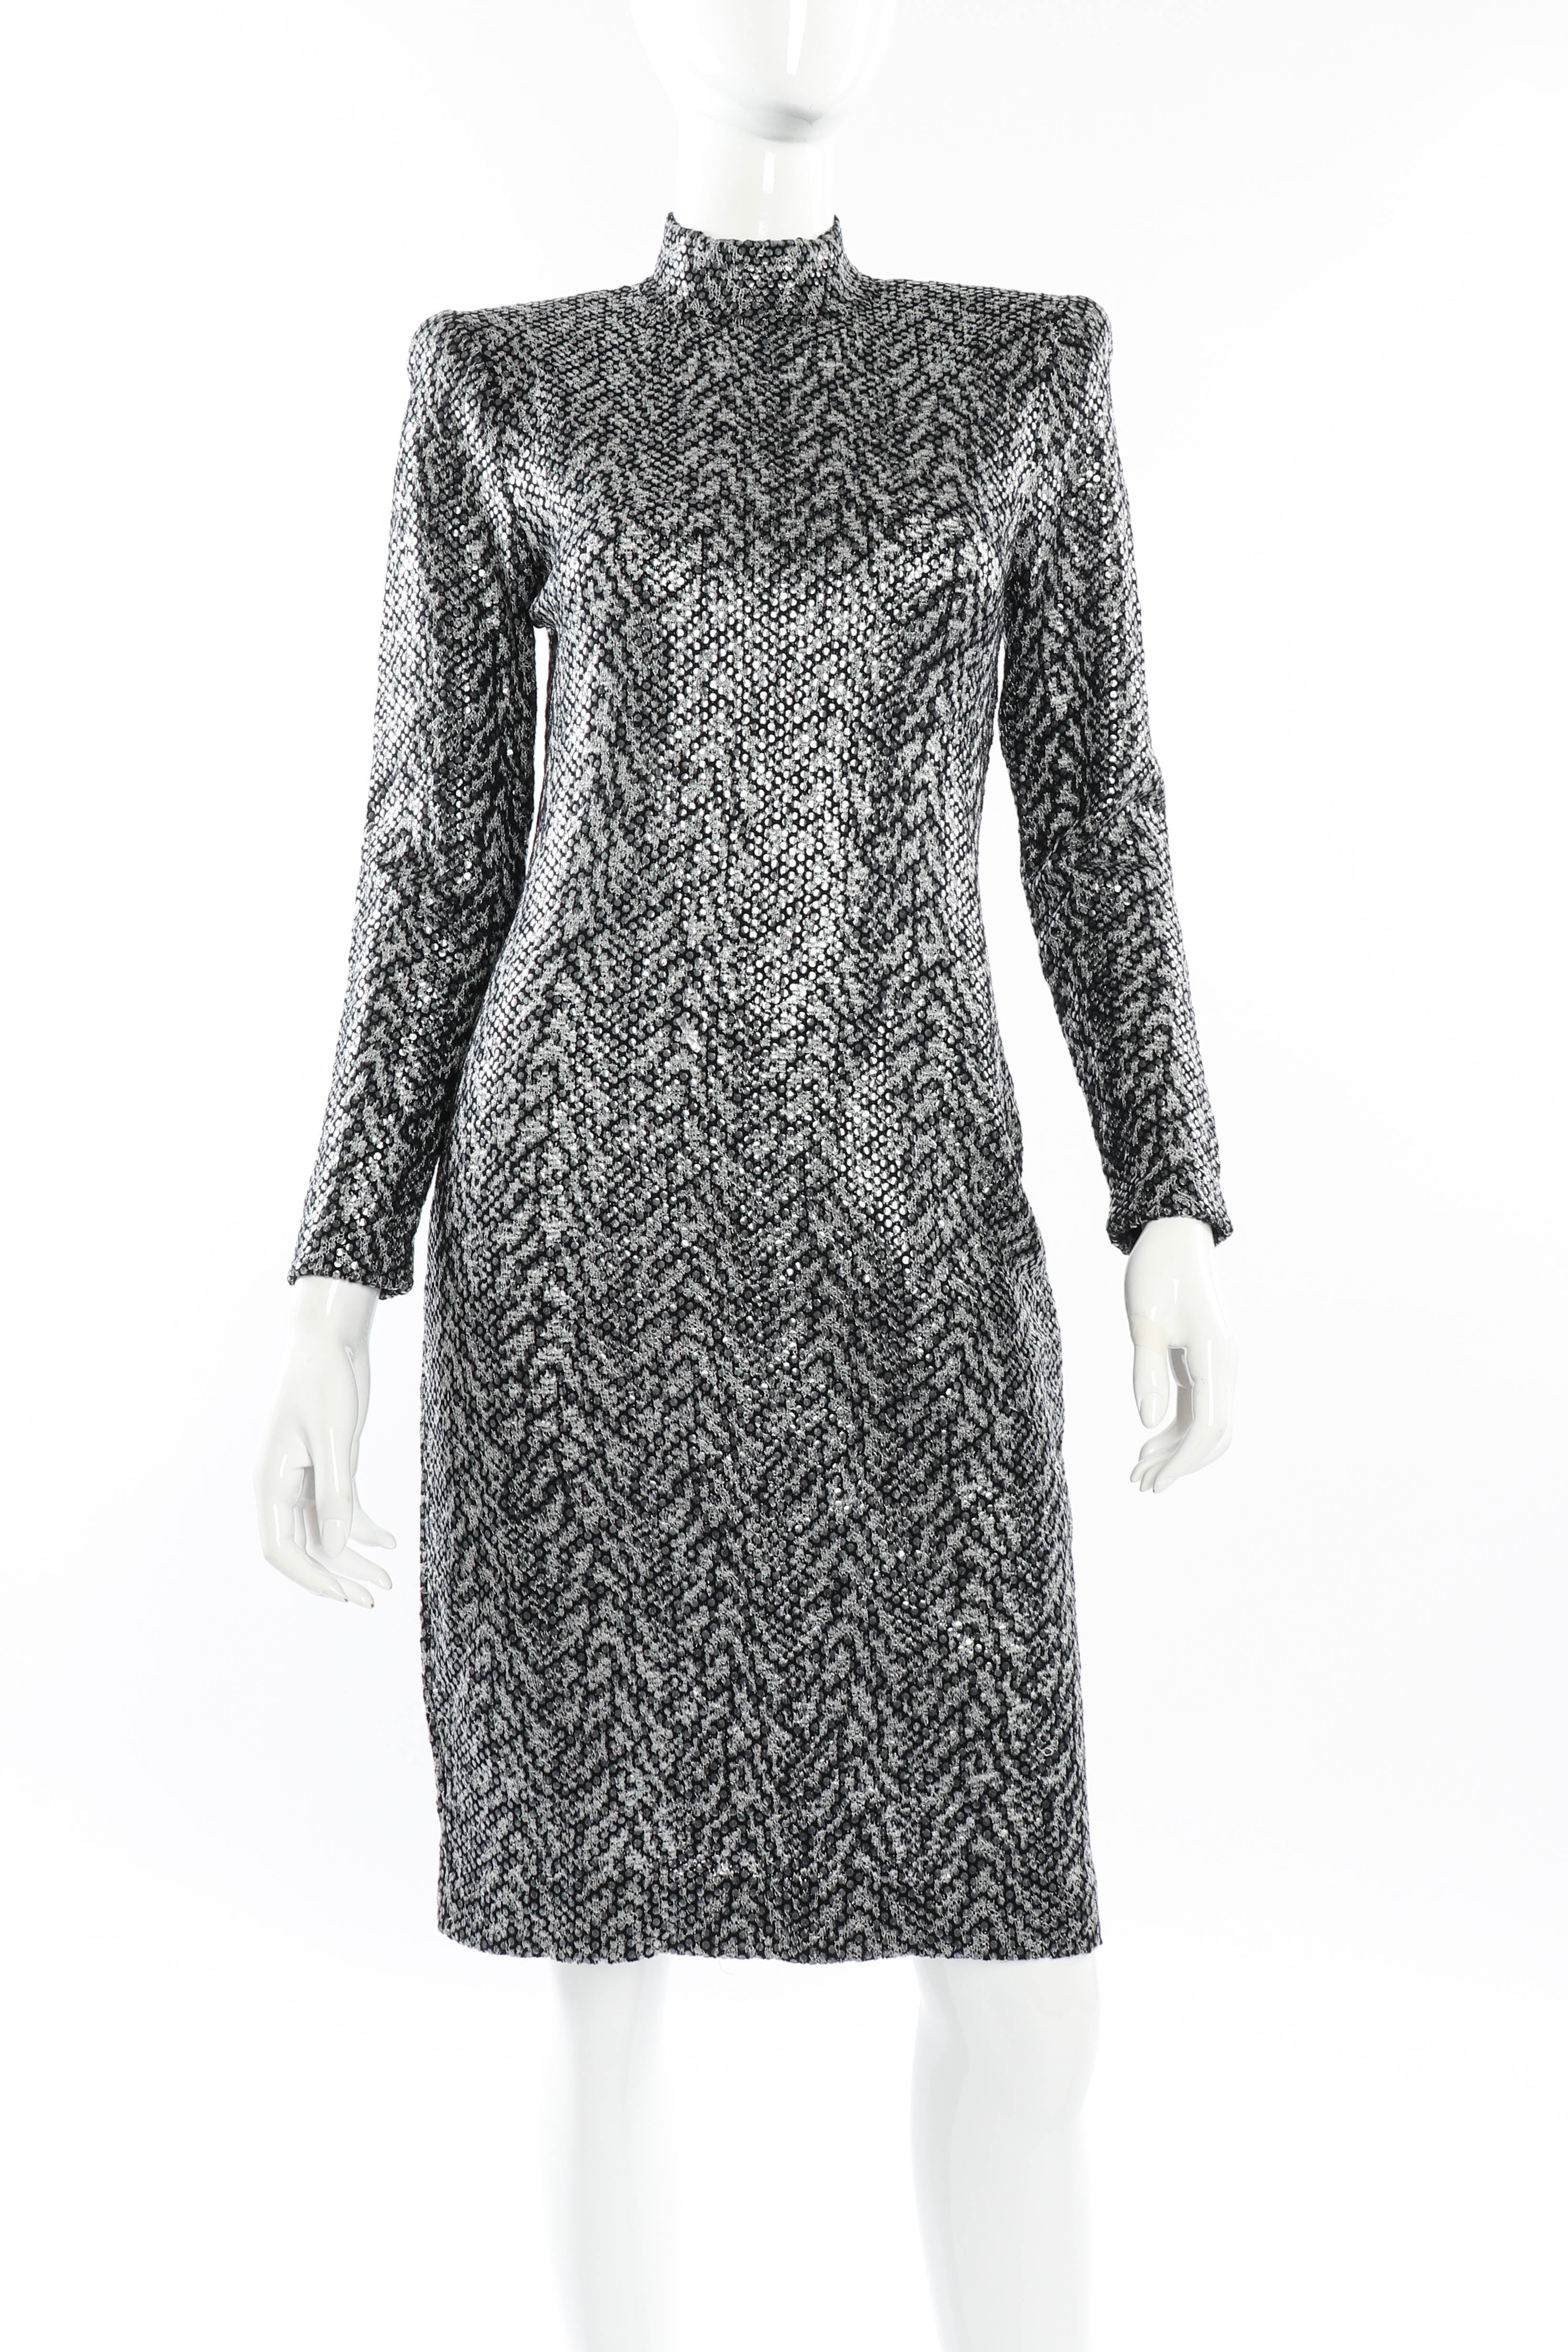 Vintage St. John Tiger Print Sequin Dress front on mannequin @recessla